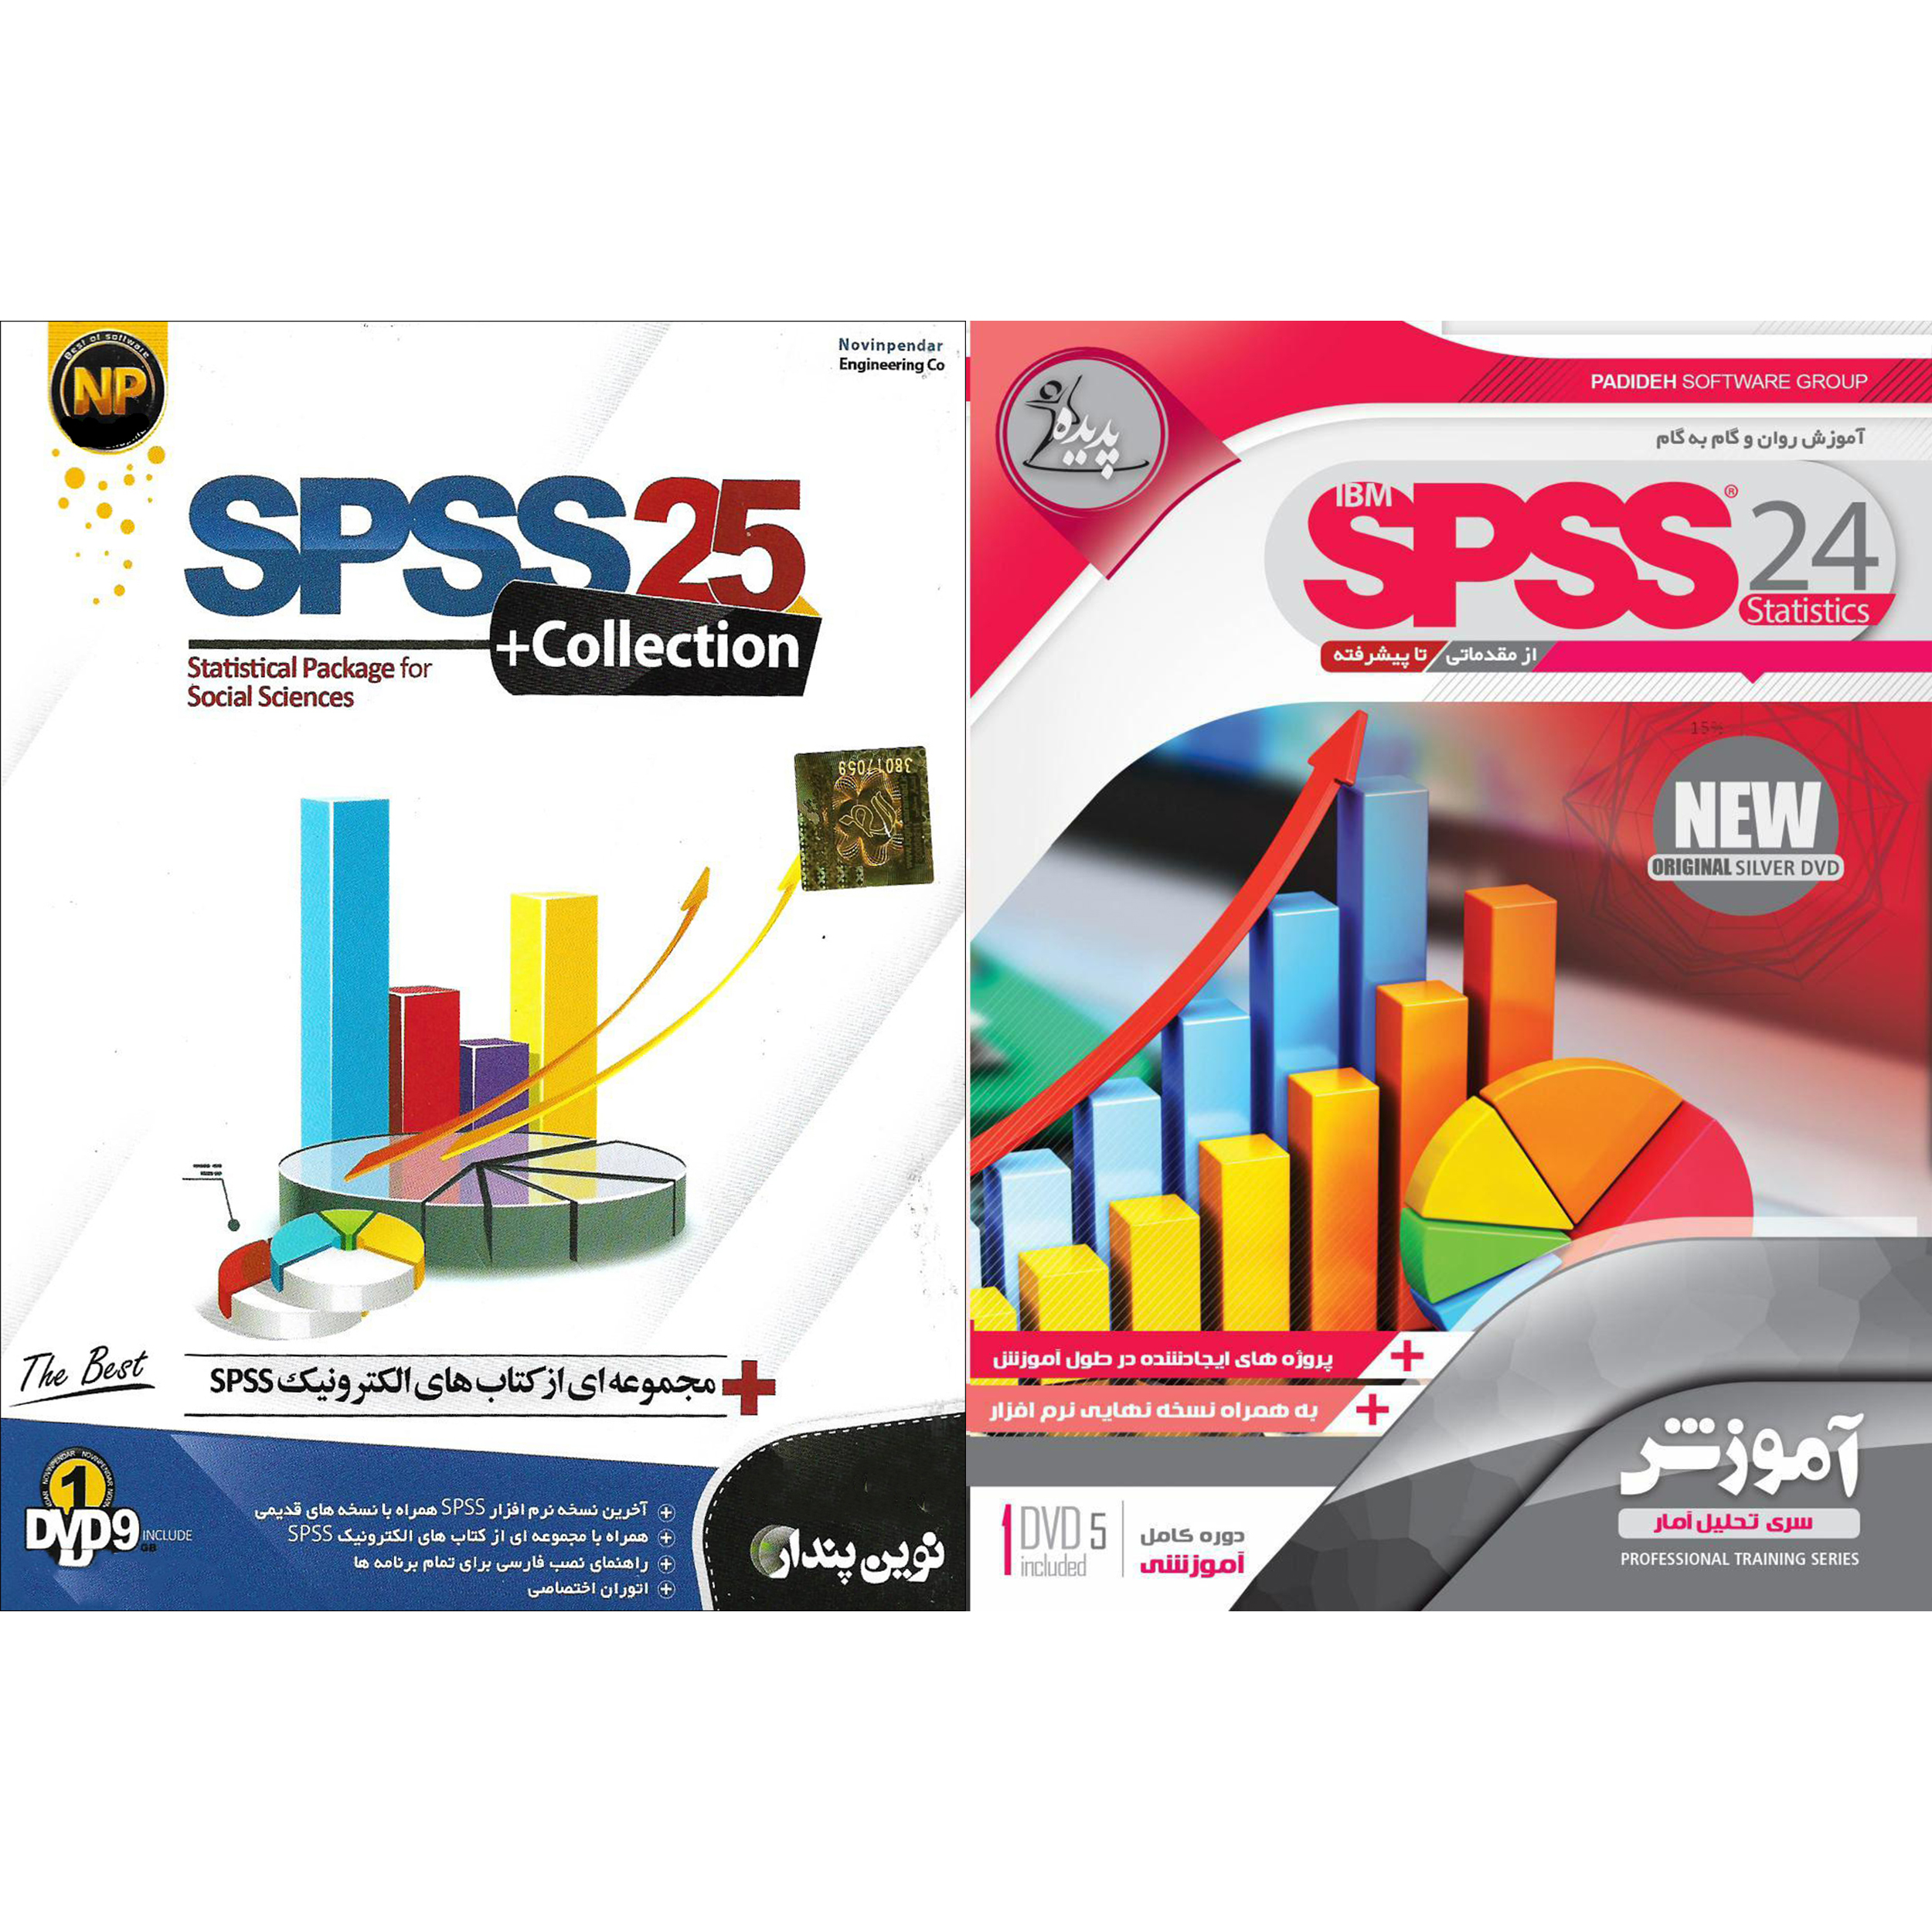 نرم افزار آموزش SPSS نشر پدیده به همراه نرم افزار SPSS 25نشر نوین پندار